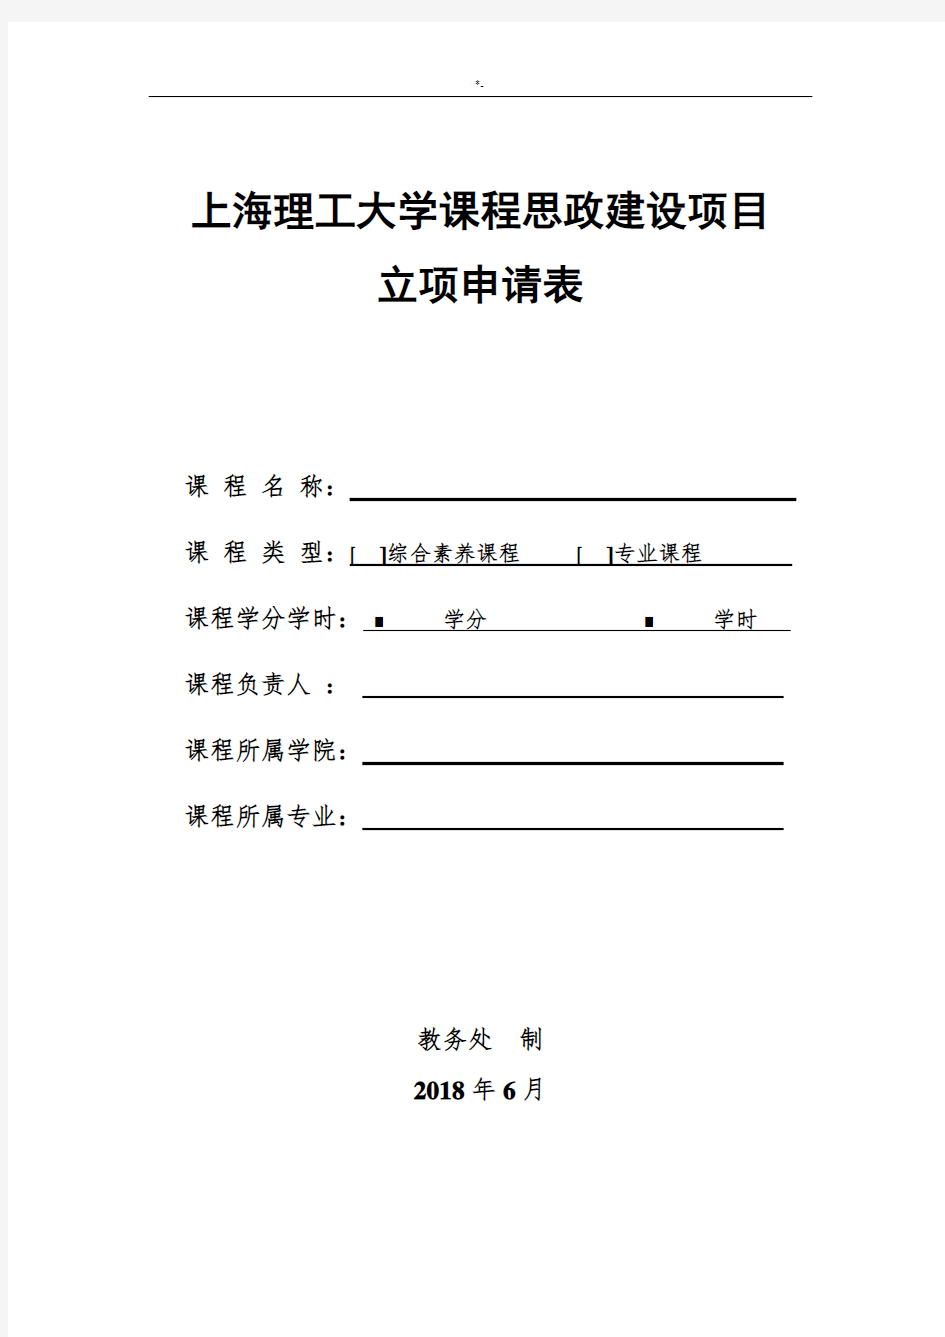 上海理工大学课程思政建设规划项目